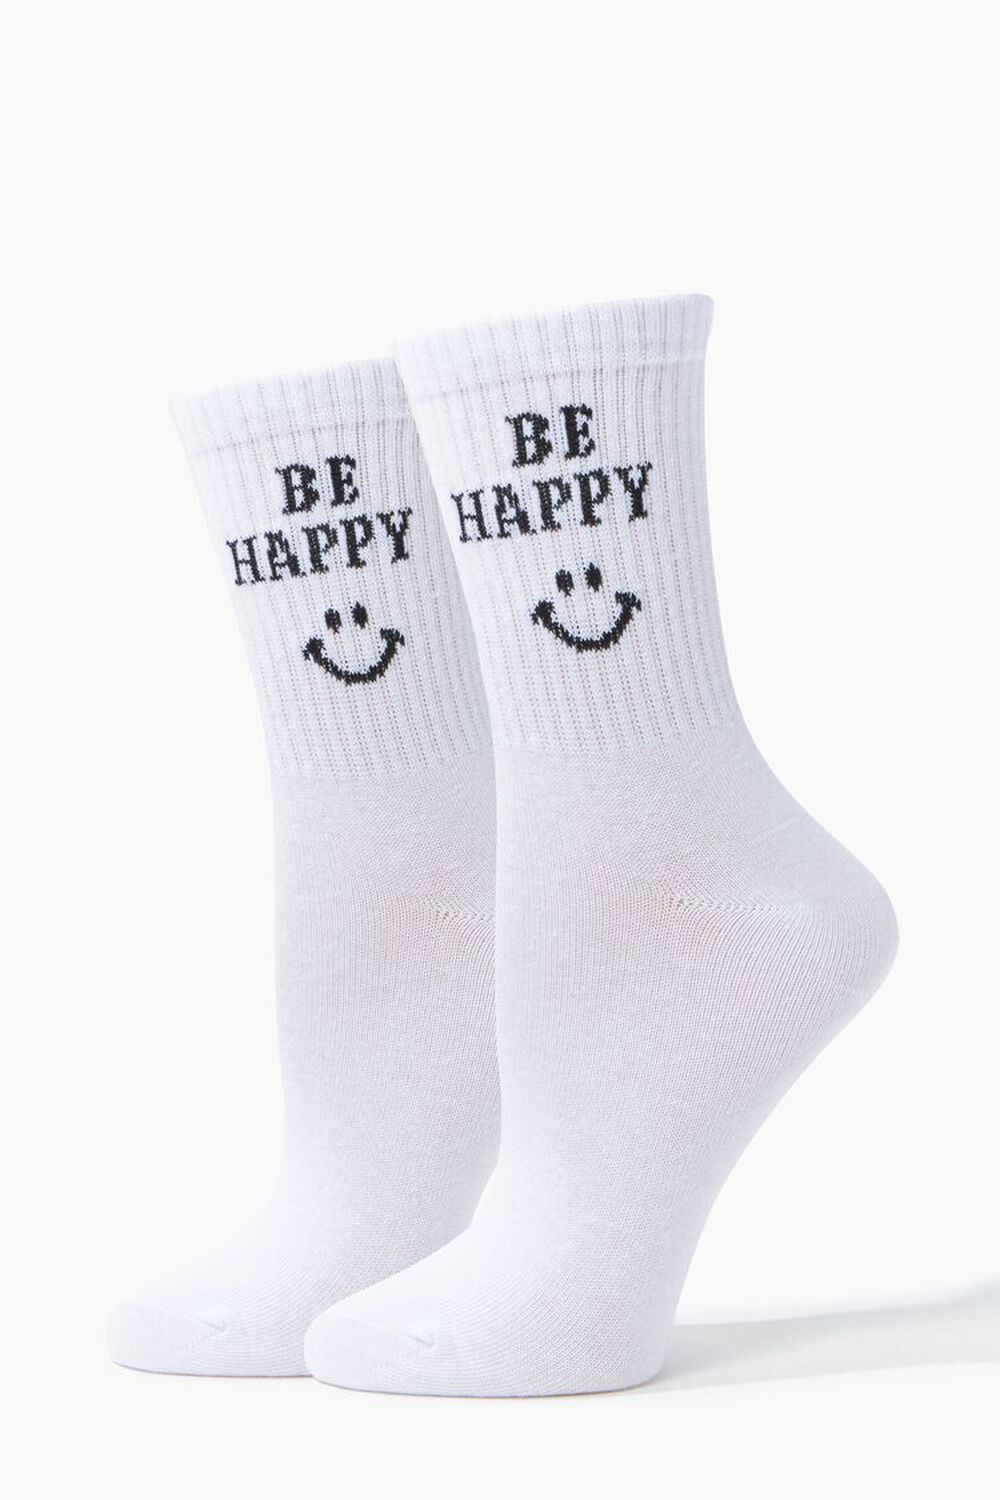 Be Happy Crew Socks, image 1